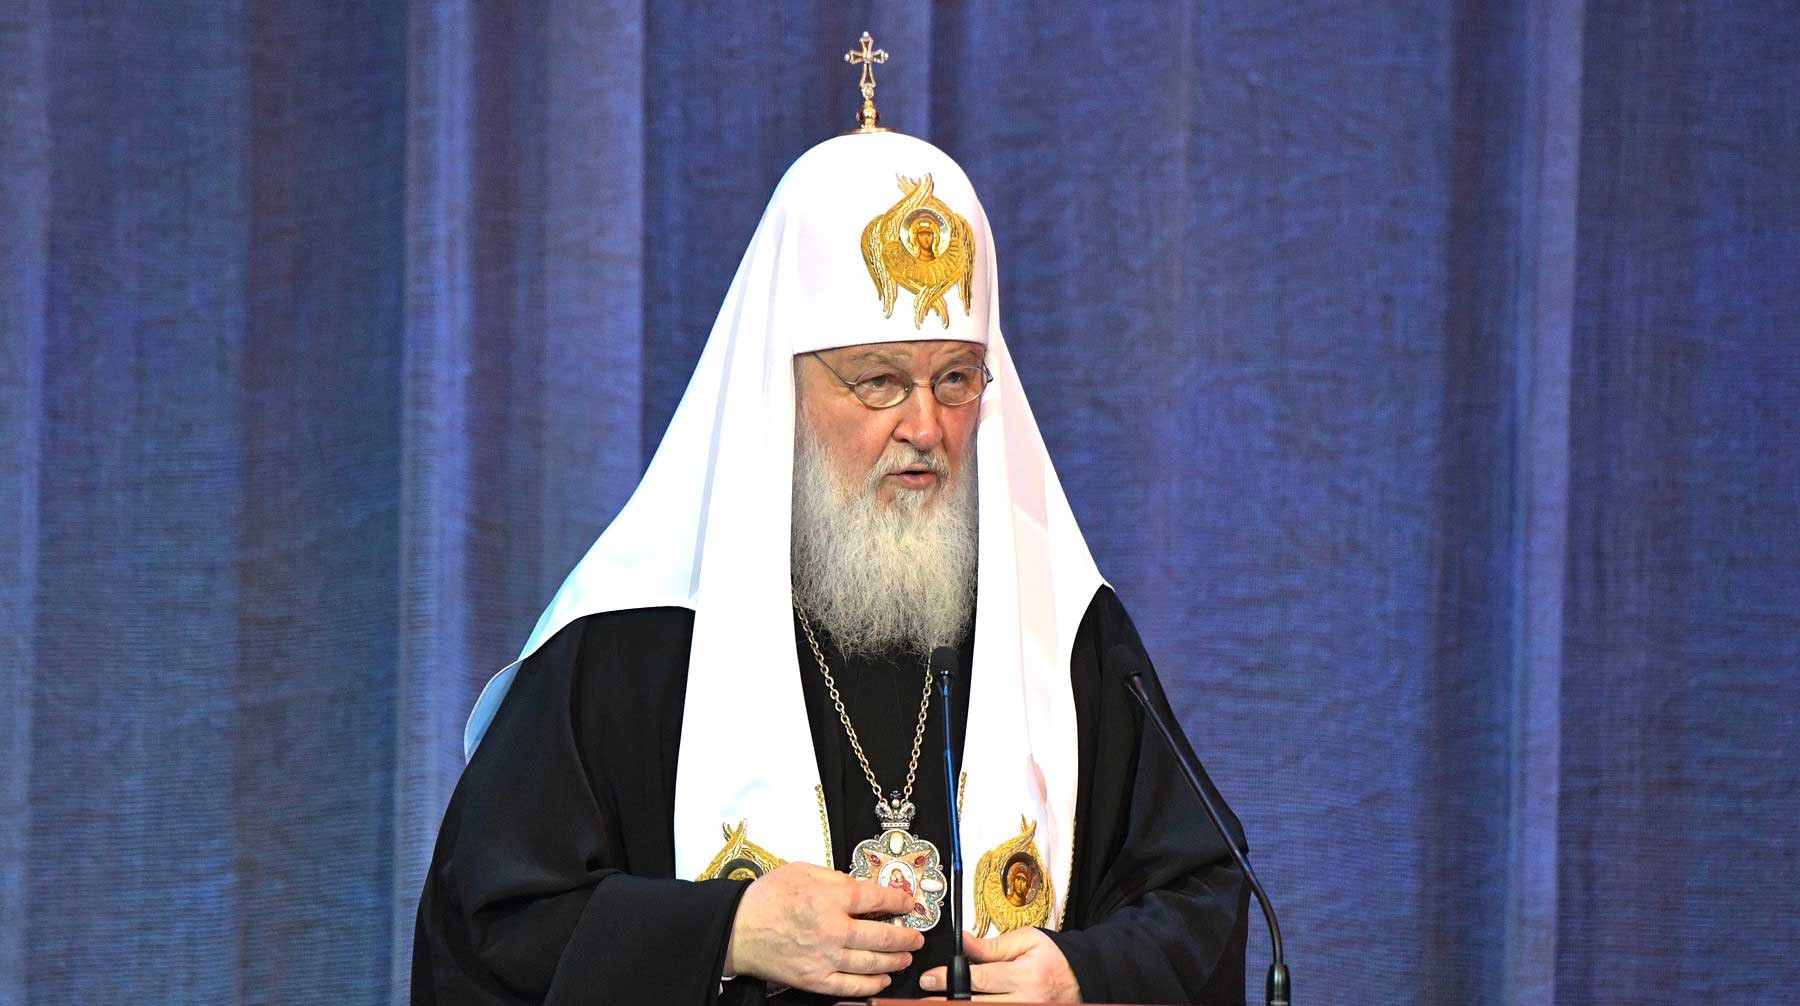 Dailystorm - СМИ: Патриарх Кирилл попросил передать РПЦ музей имени Андрея Рублева в Москве